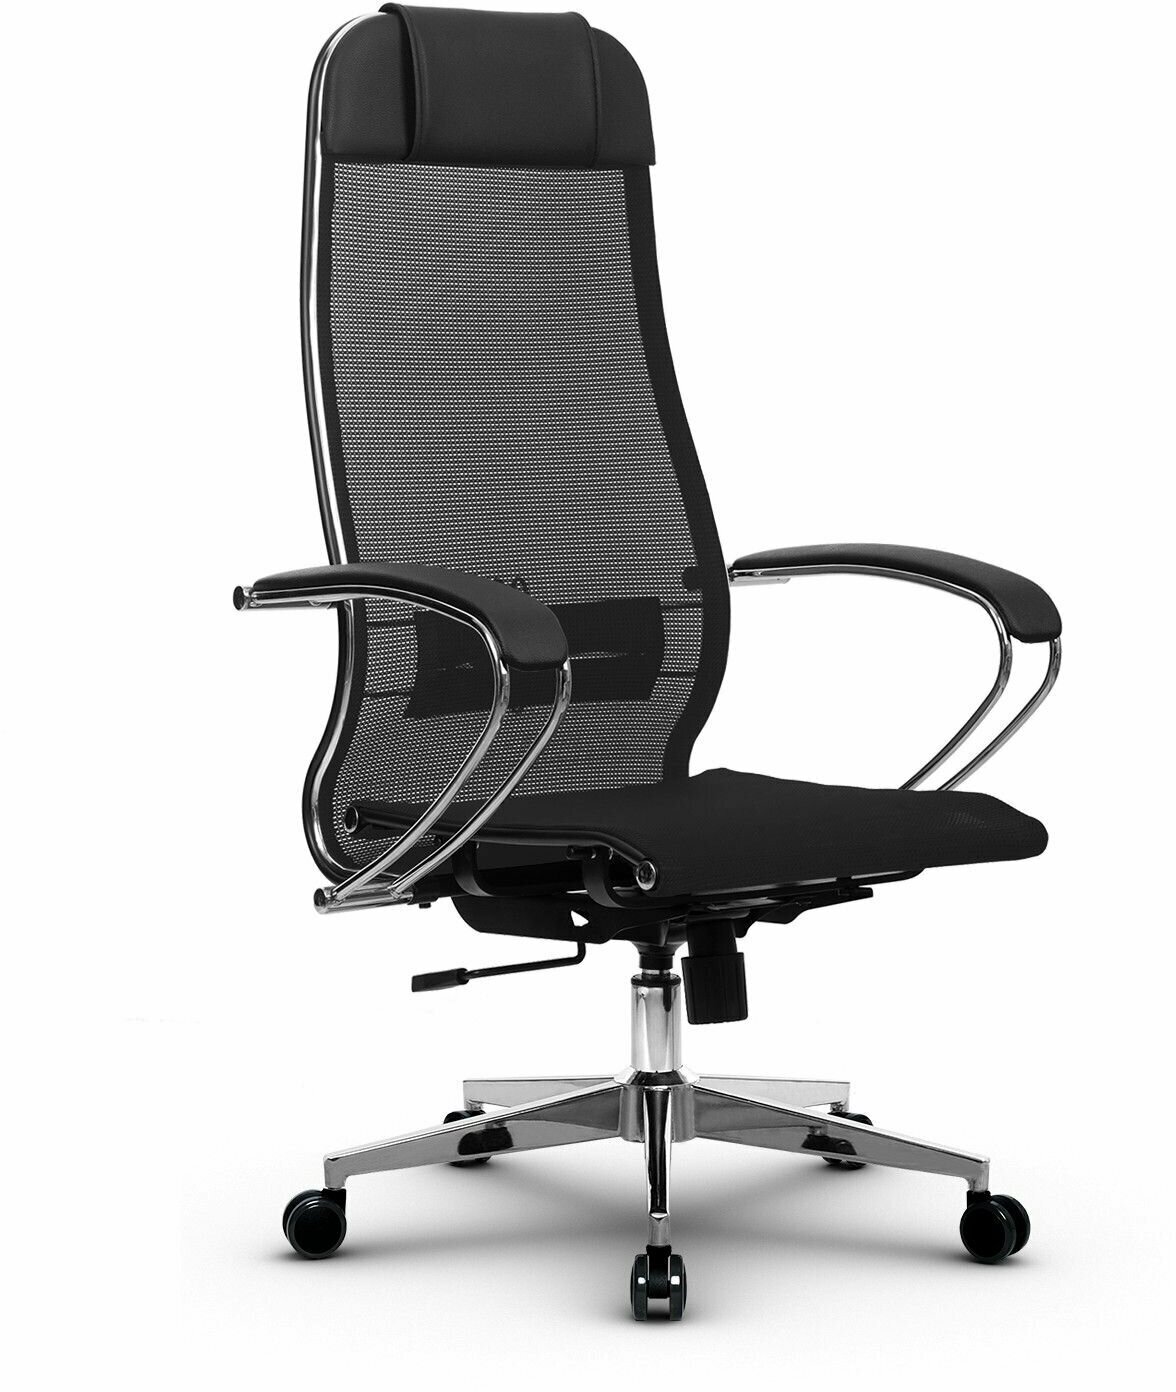 Компьютерное кресло Metta MPRU, кресло офисное, кресло компьютерное, кресло для дома и офиса, кресло Metta (Черный)